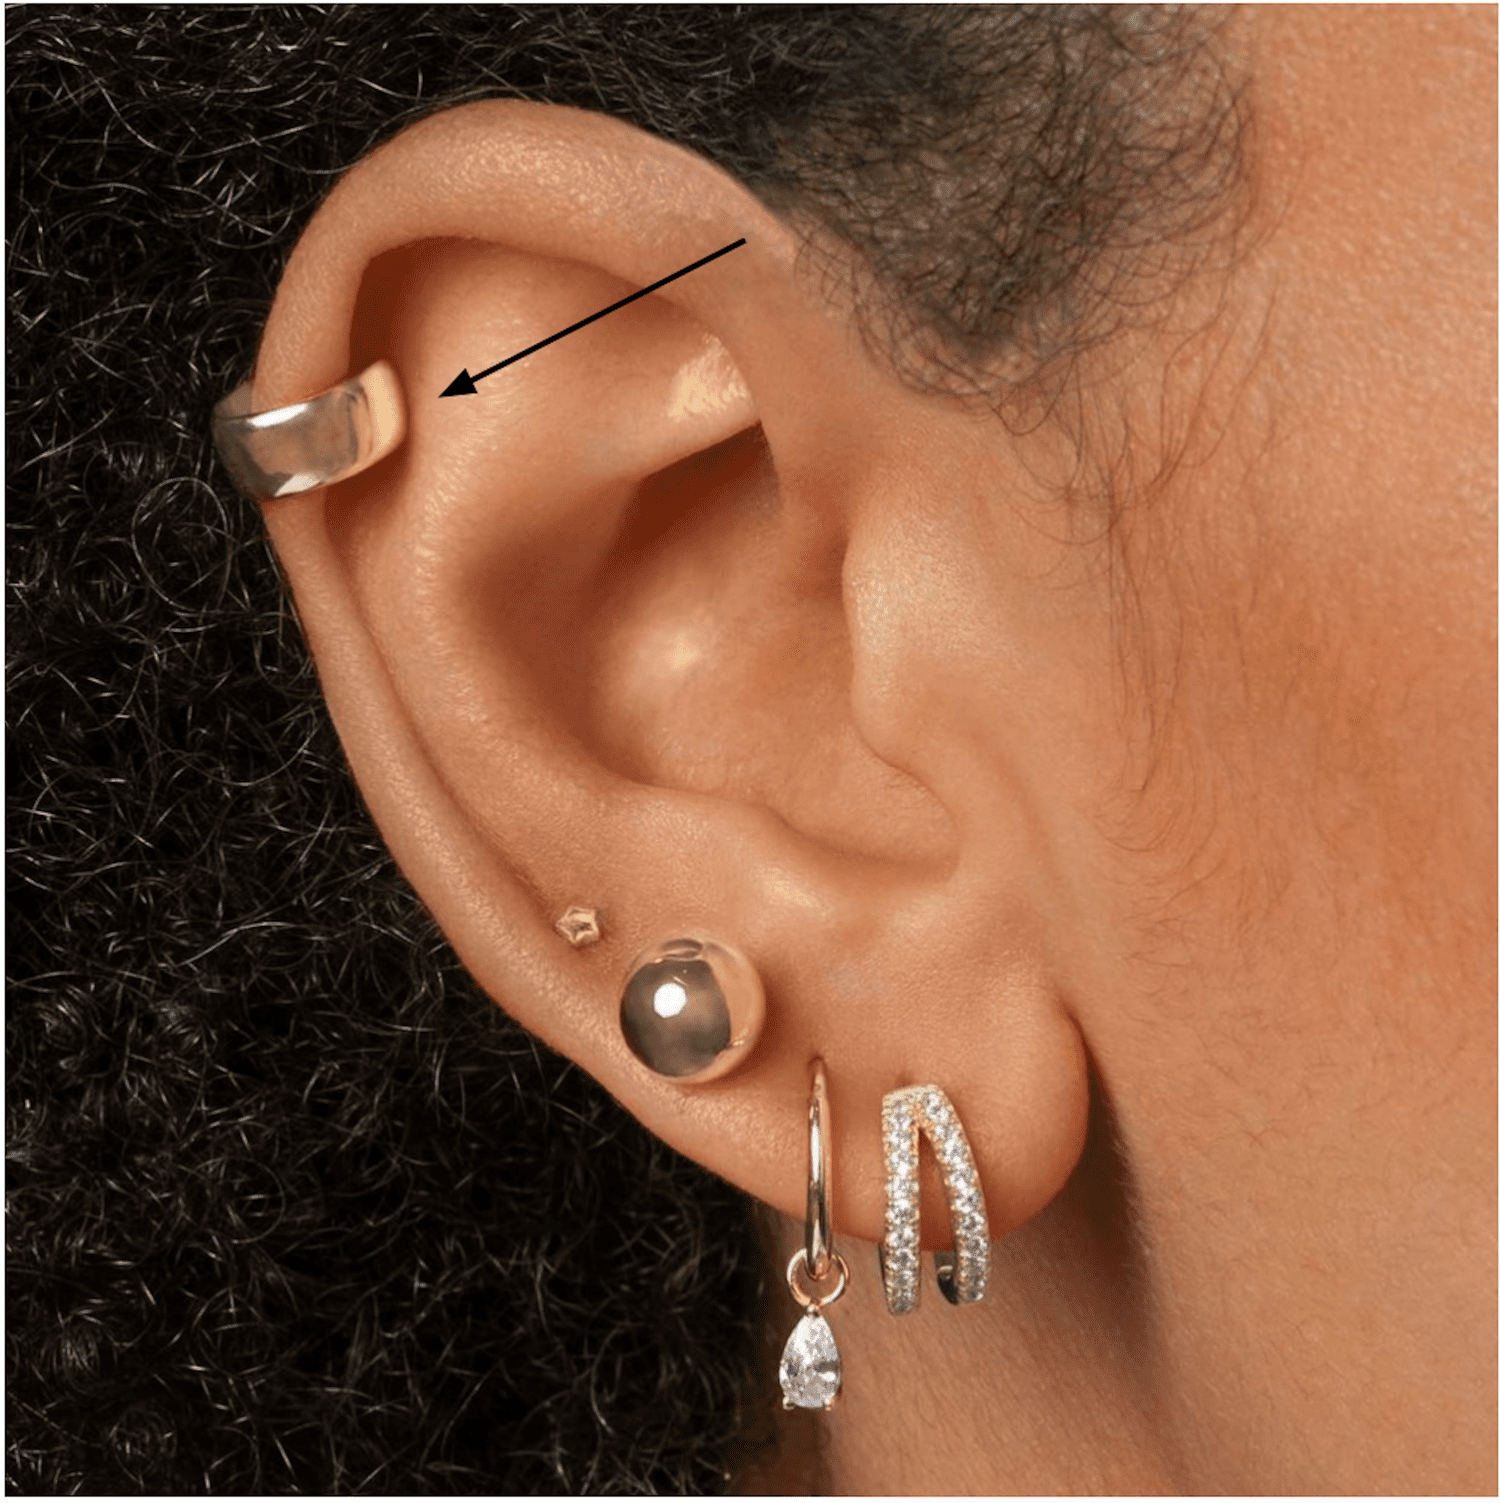 Vista lateral da orelha de uma mulher com um piercing espiral dourado